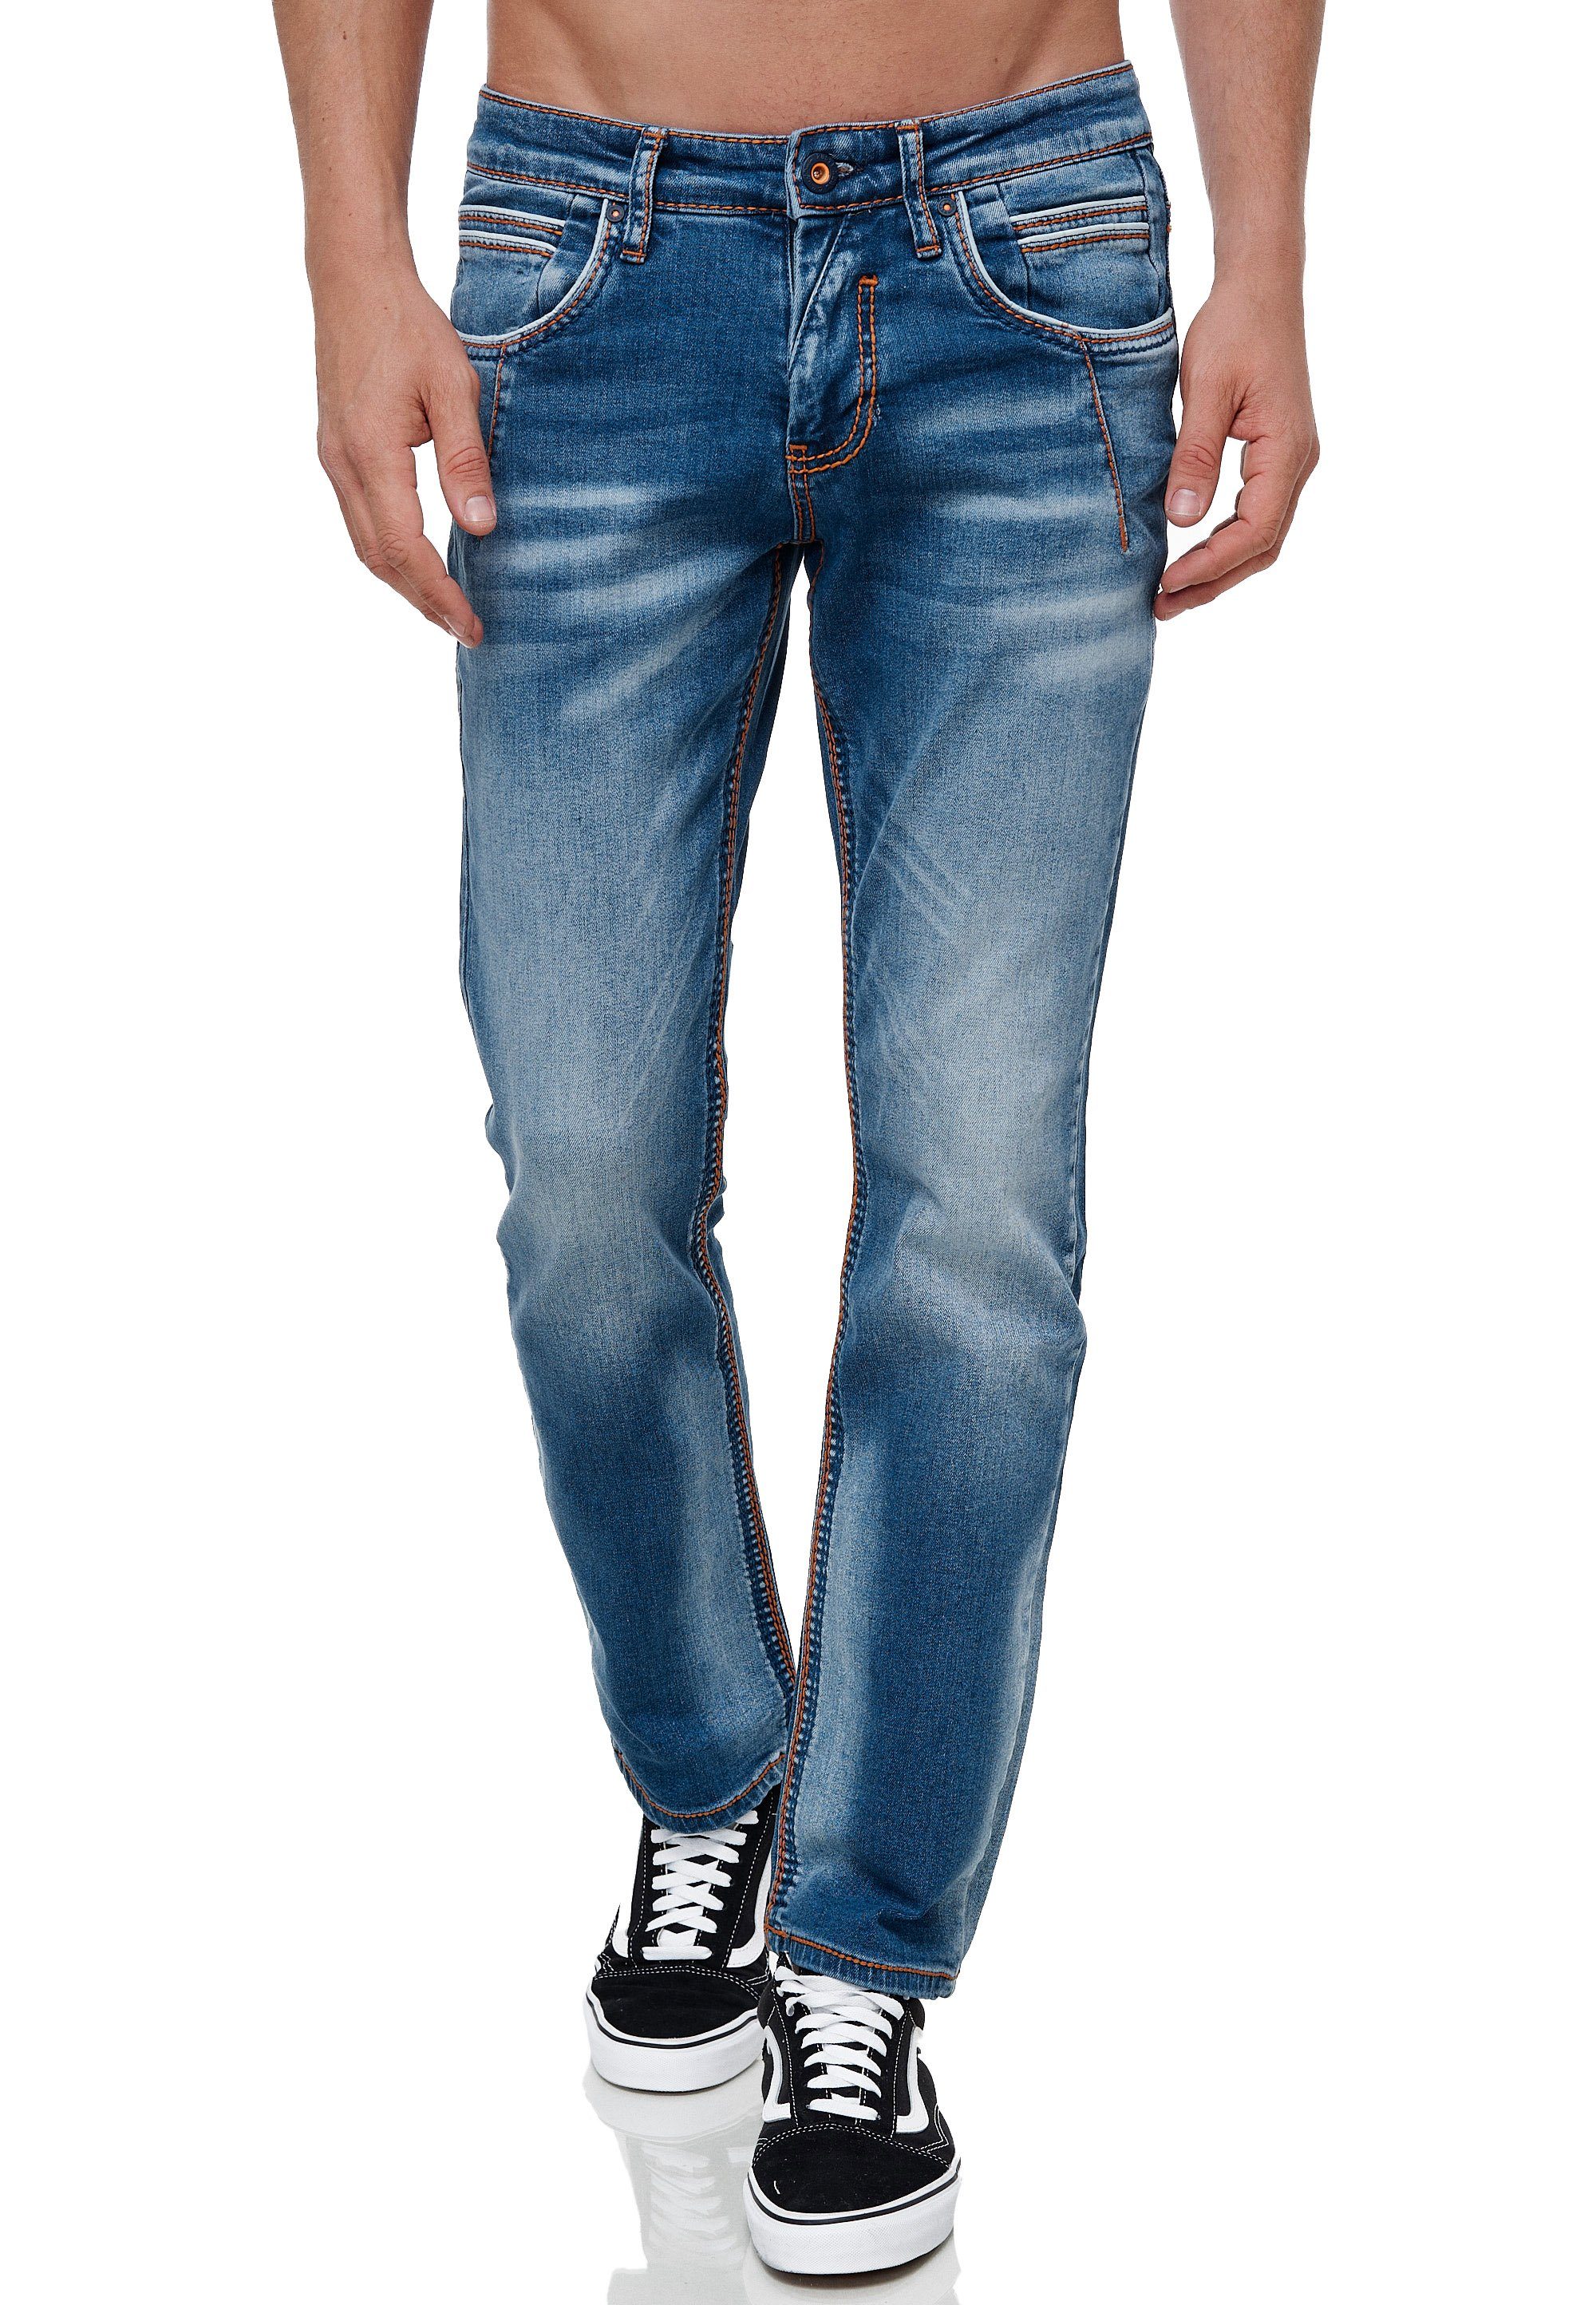 Rusty Neal Straight-Jeans angesagten Ziernähten mit YORK 51 NEW